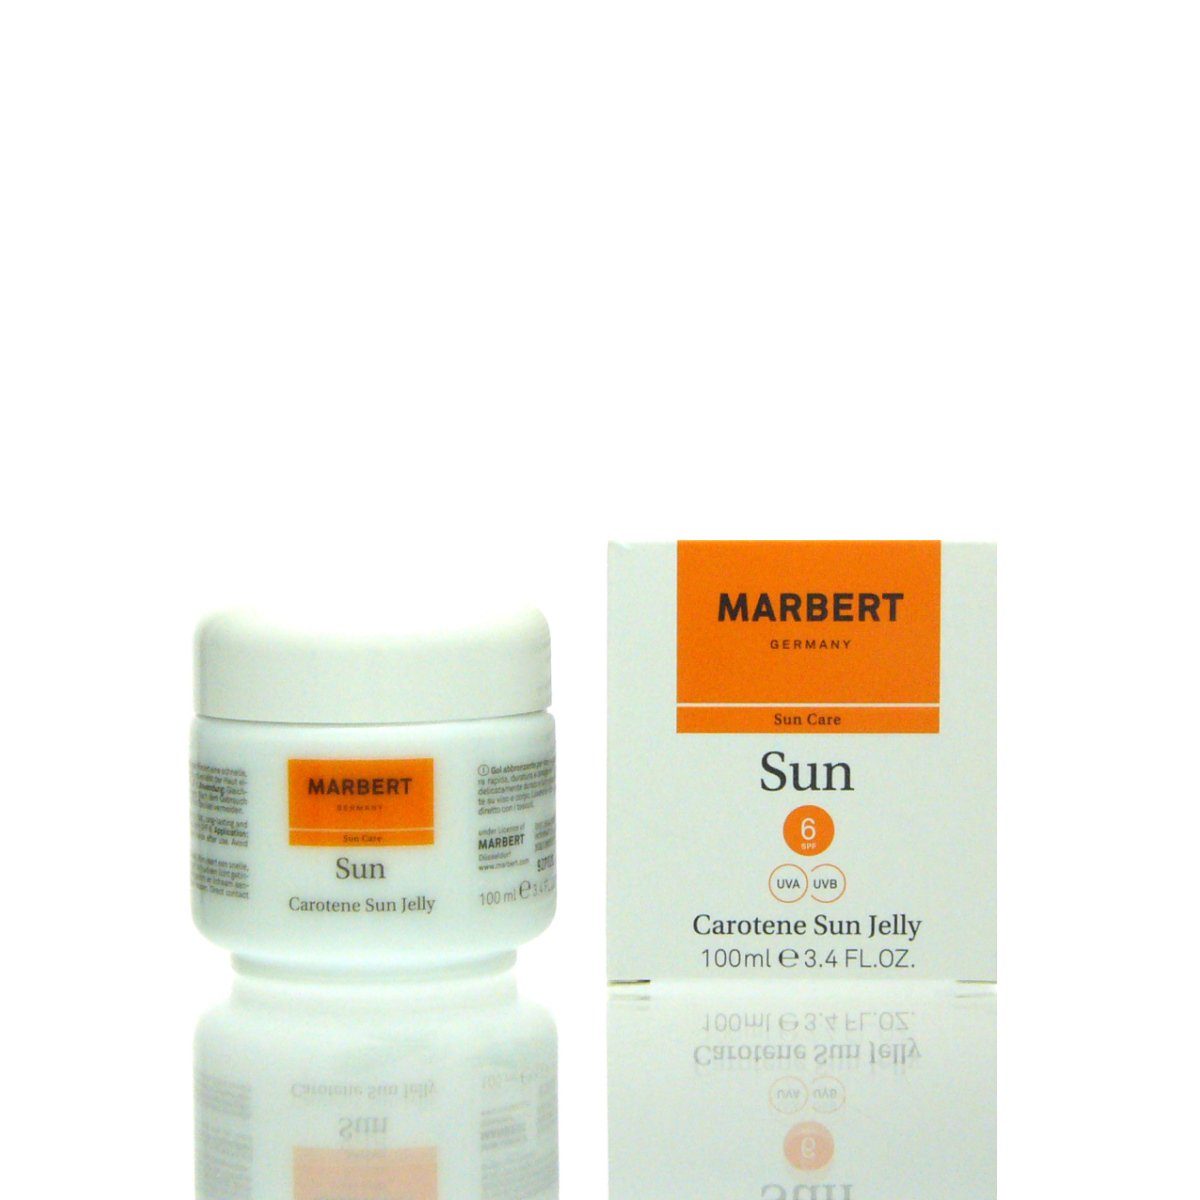 Marbert Make-up Carotene Sun Sun ml SPF 100 Jelly Marbert 6